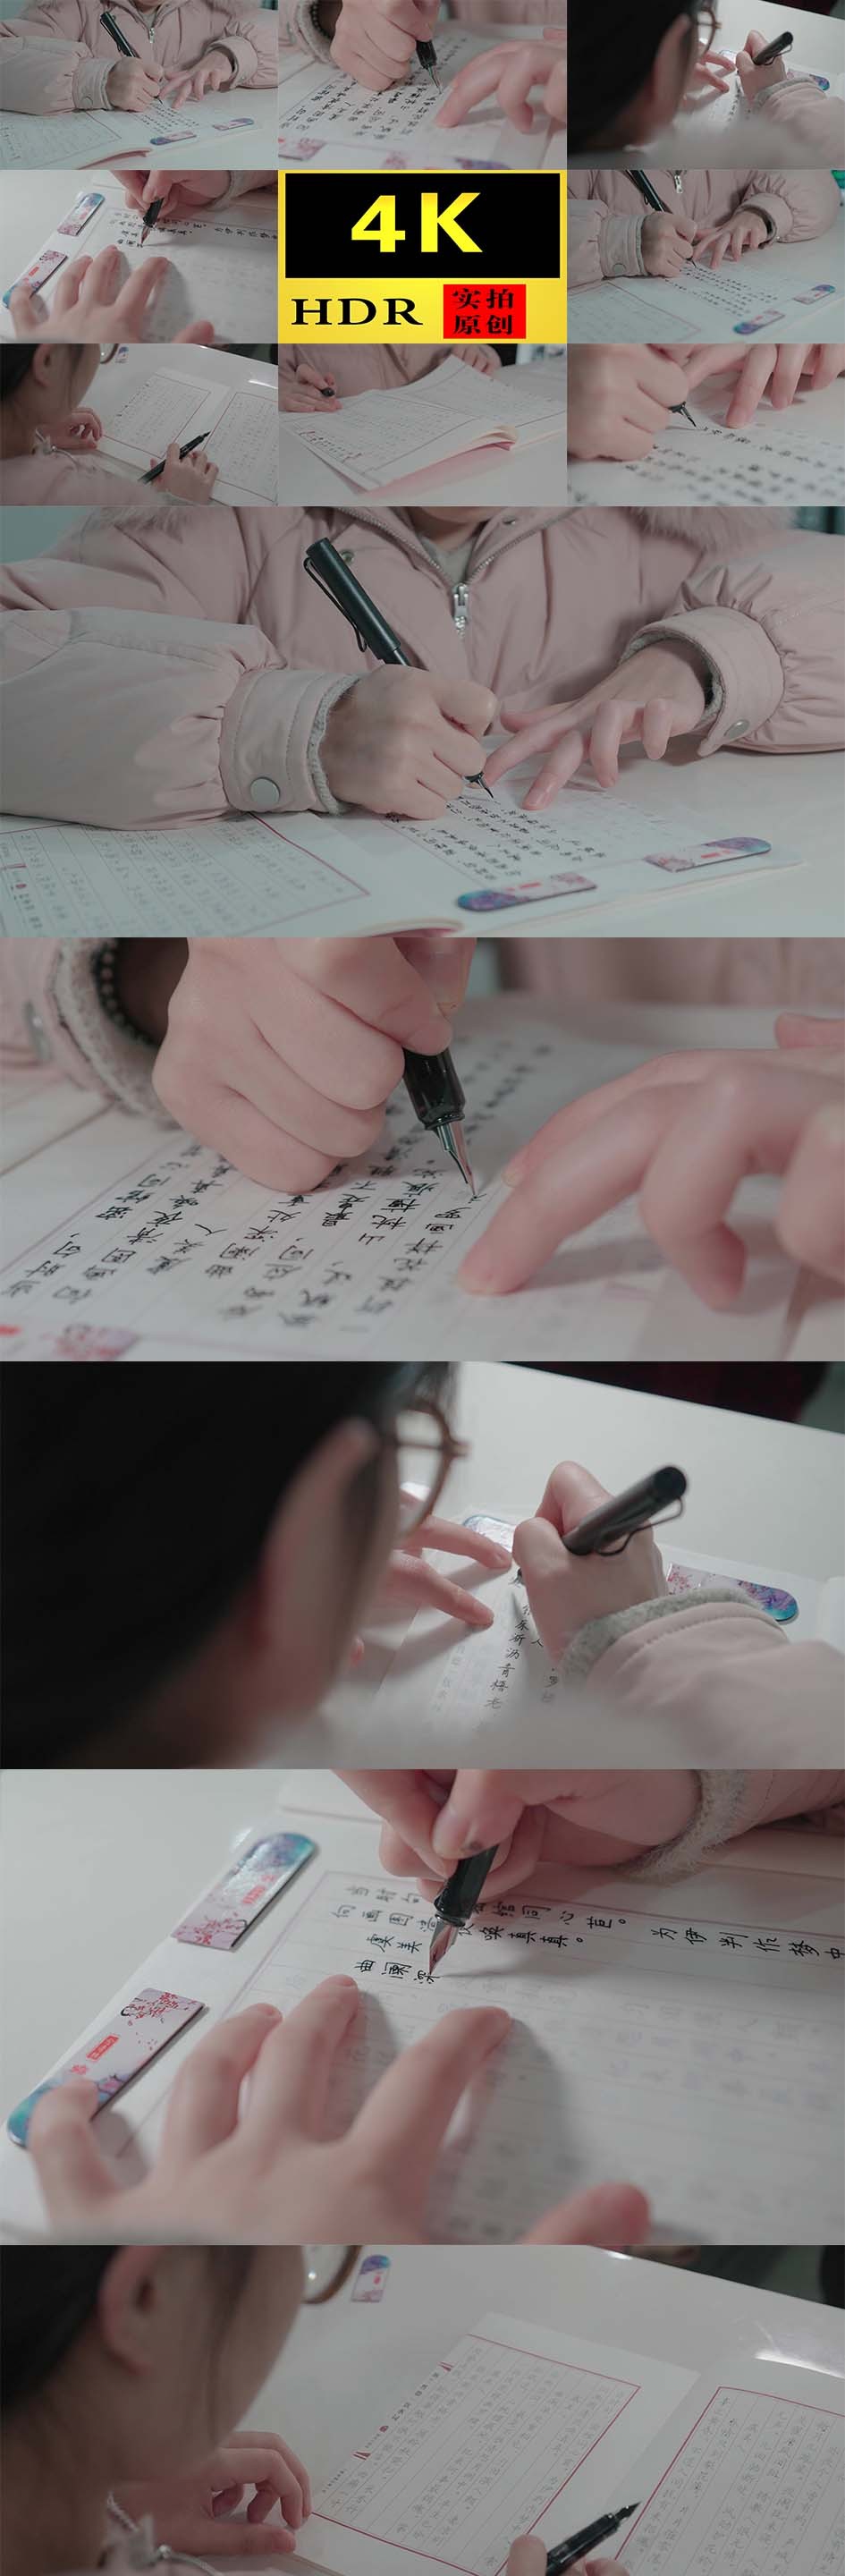 【4K】字帖练字钢笔字书法